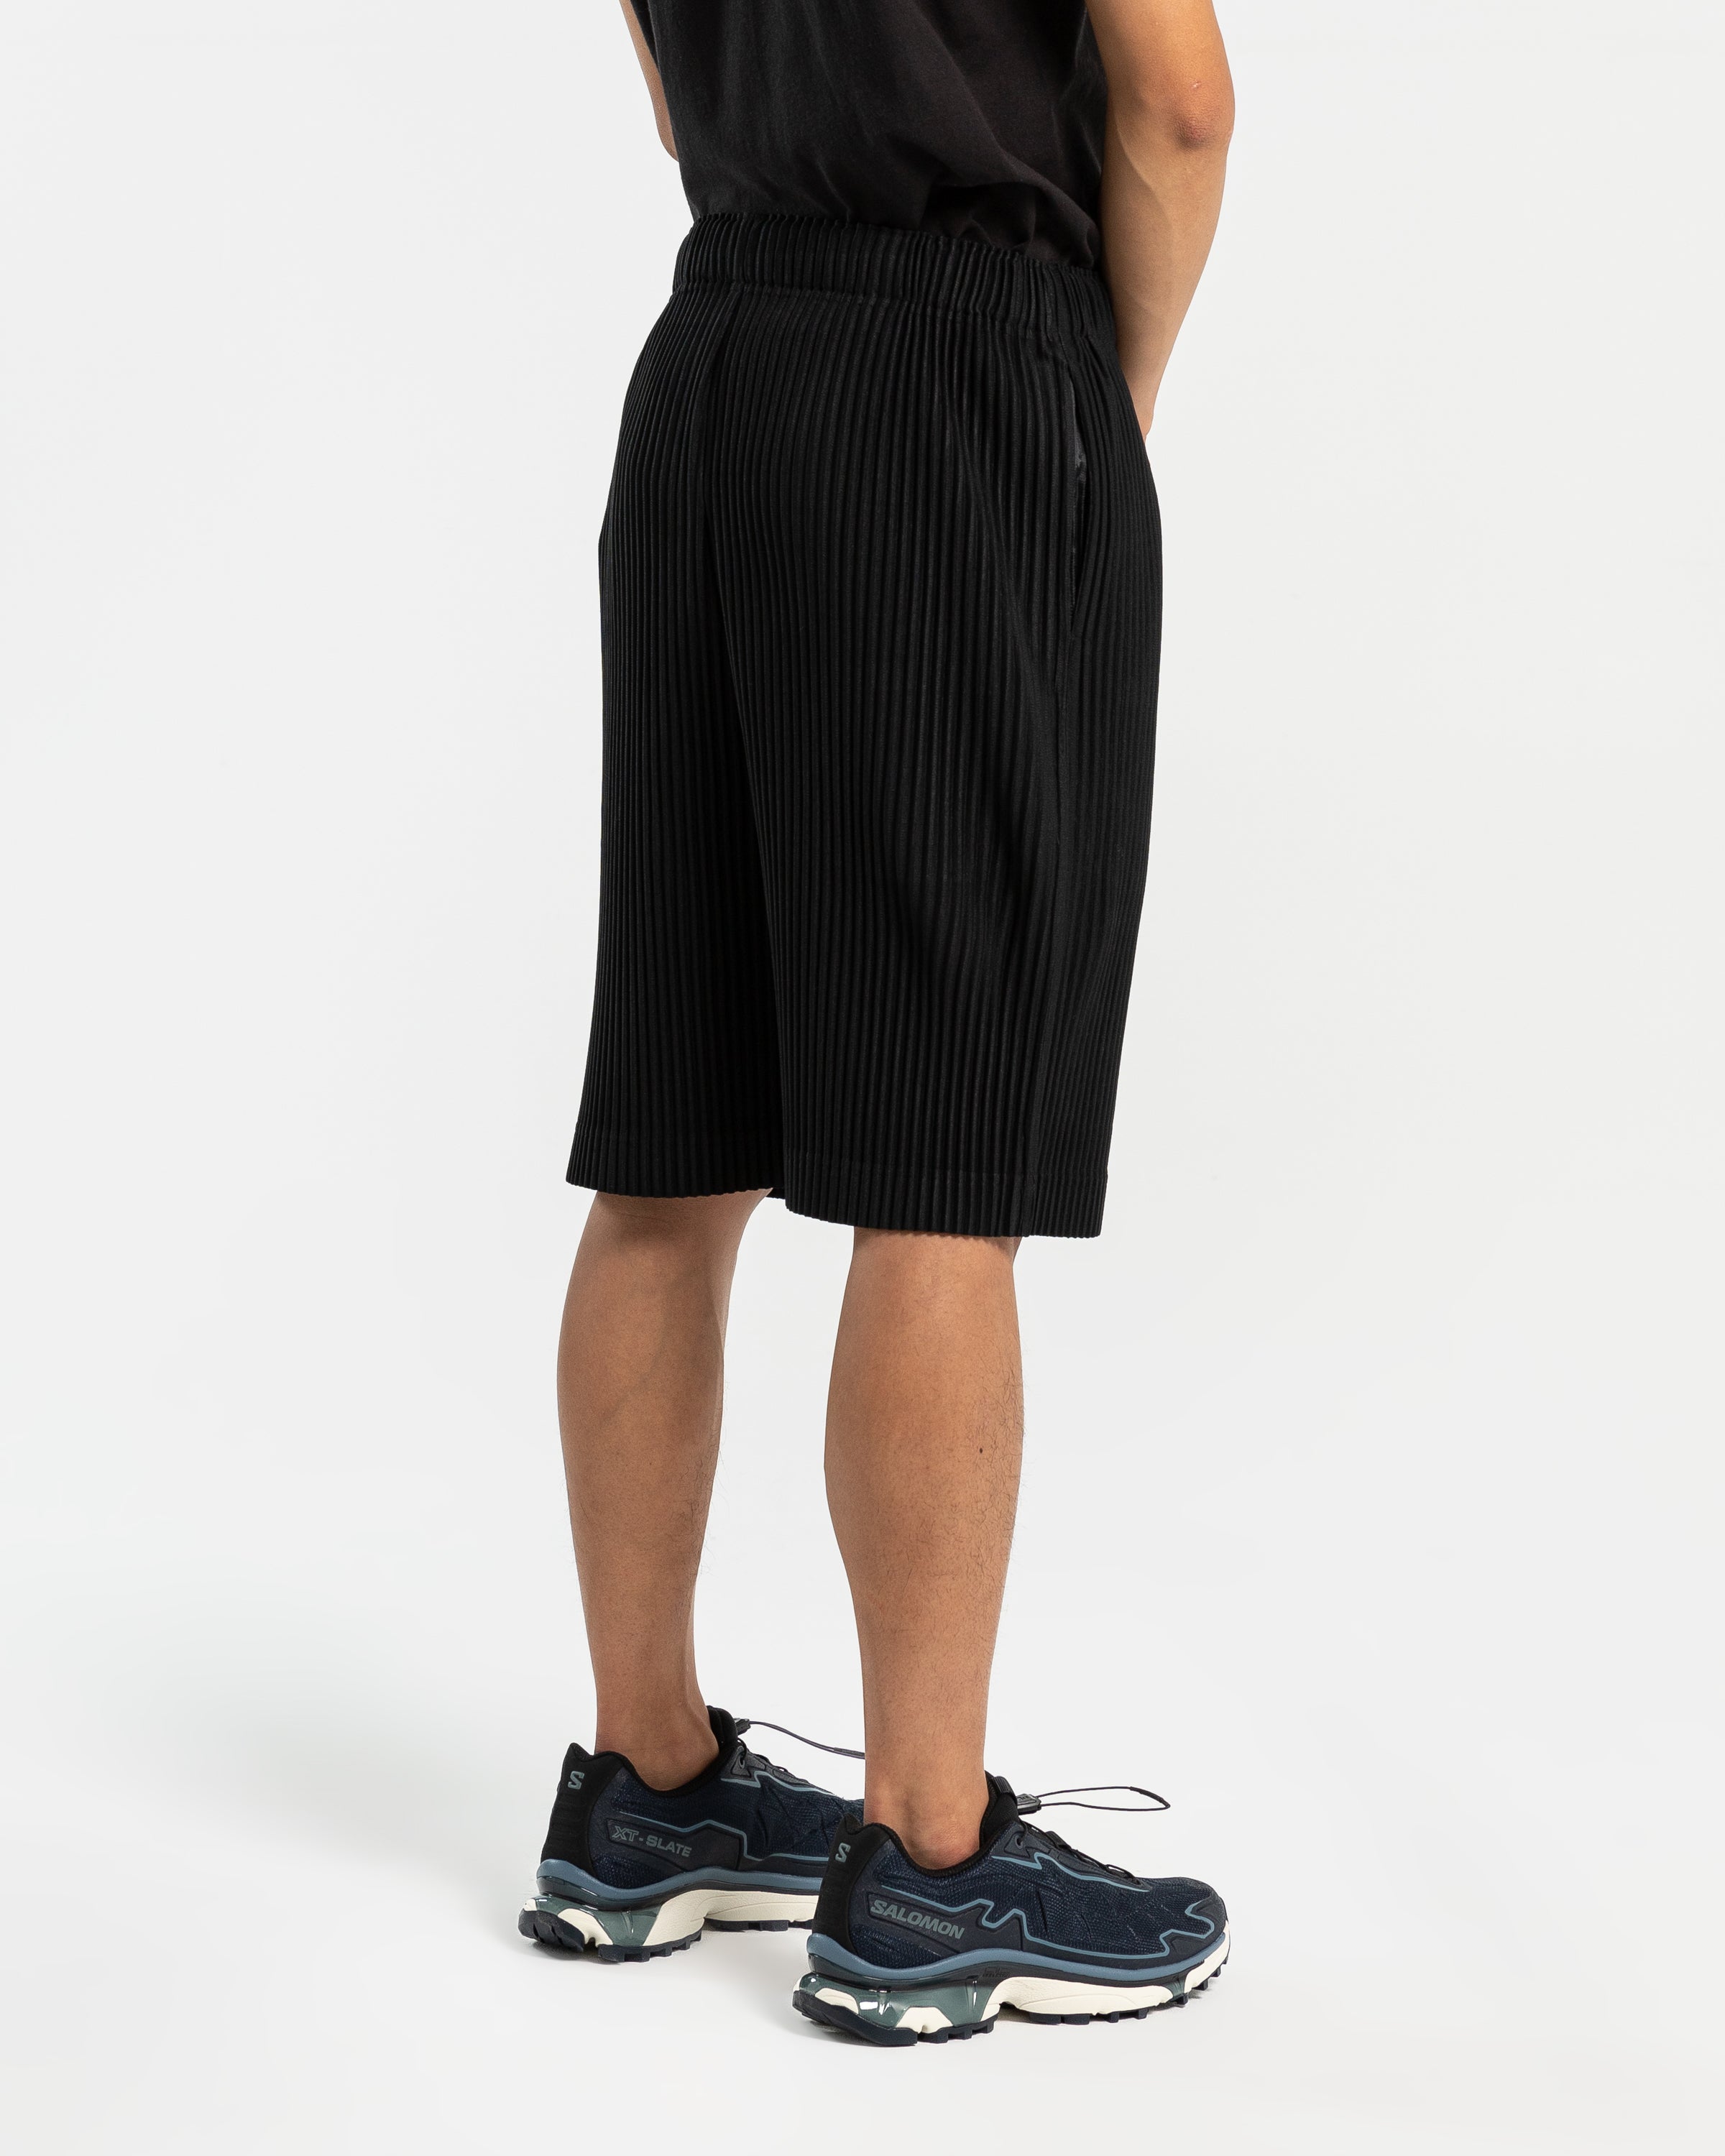 MC May Shorts in Black